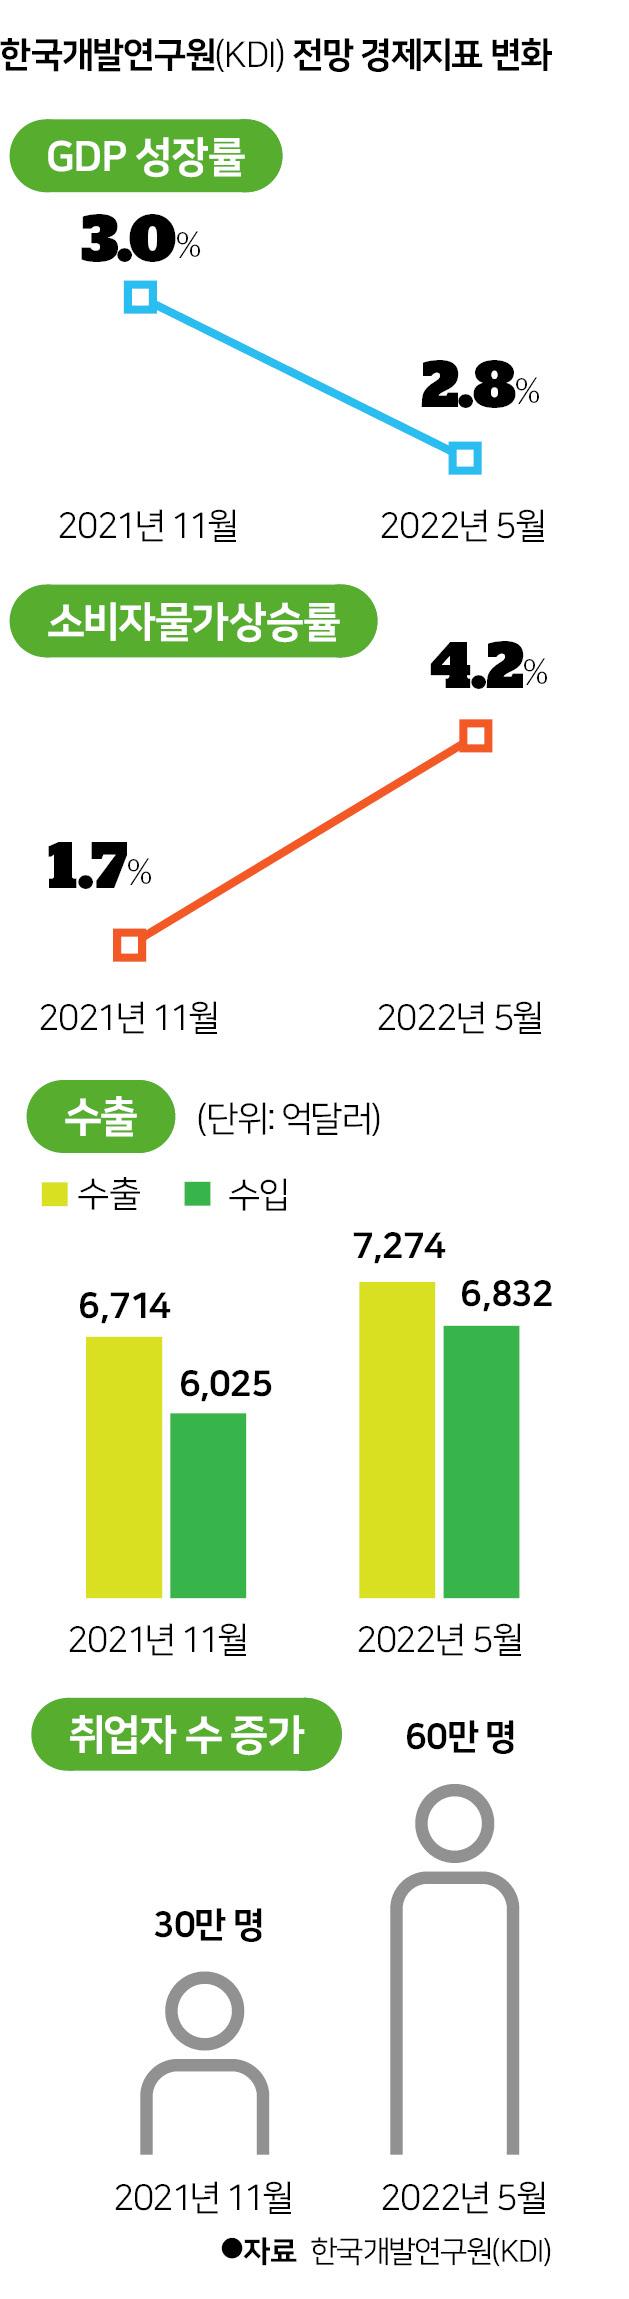 한국개발연구원(KDI) 전망 경제지표 변화